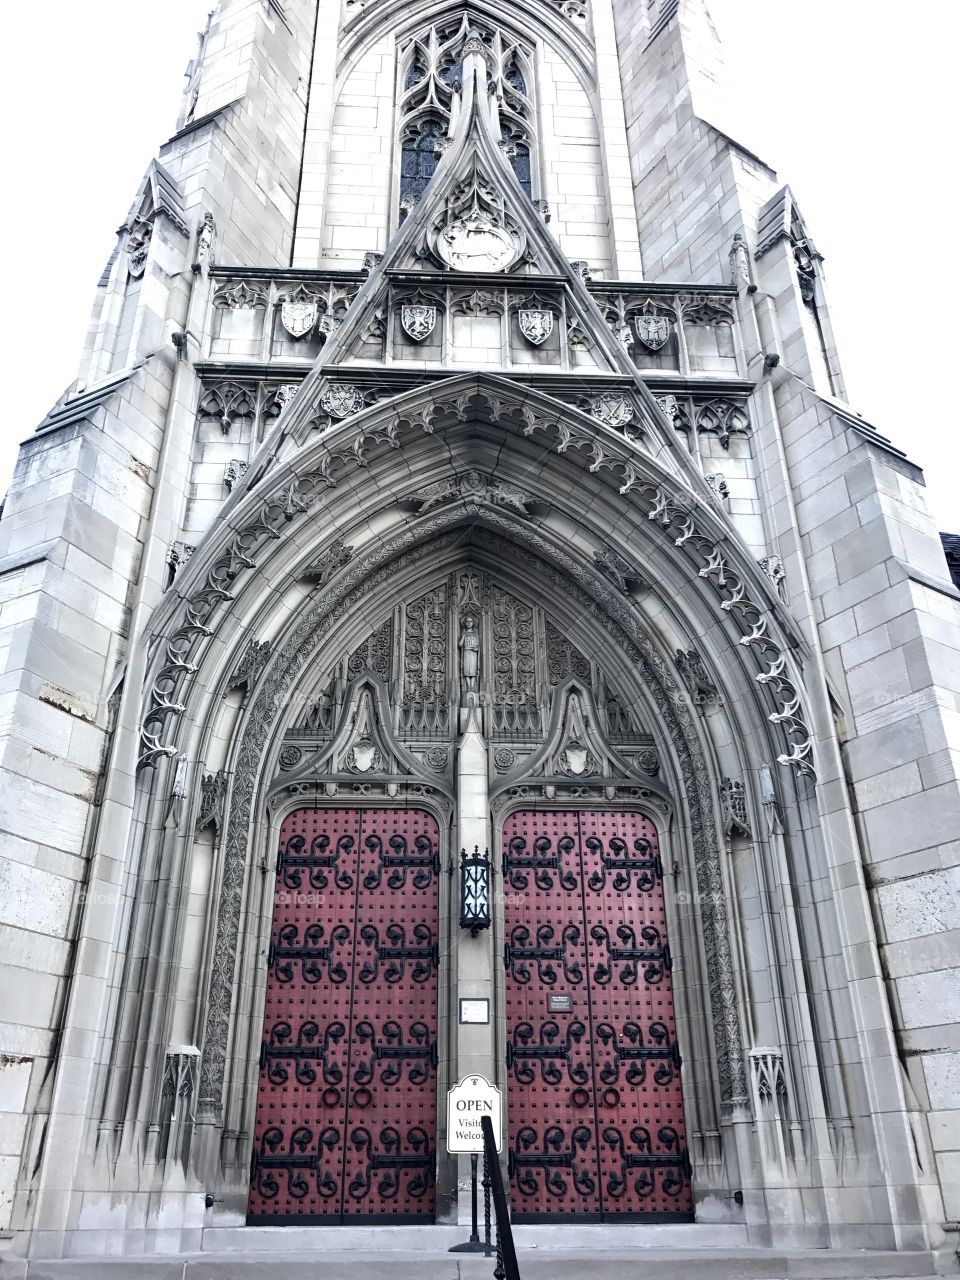 Doors to salvation